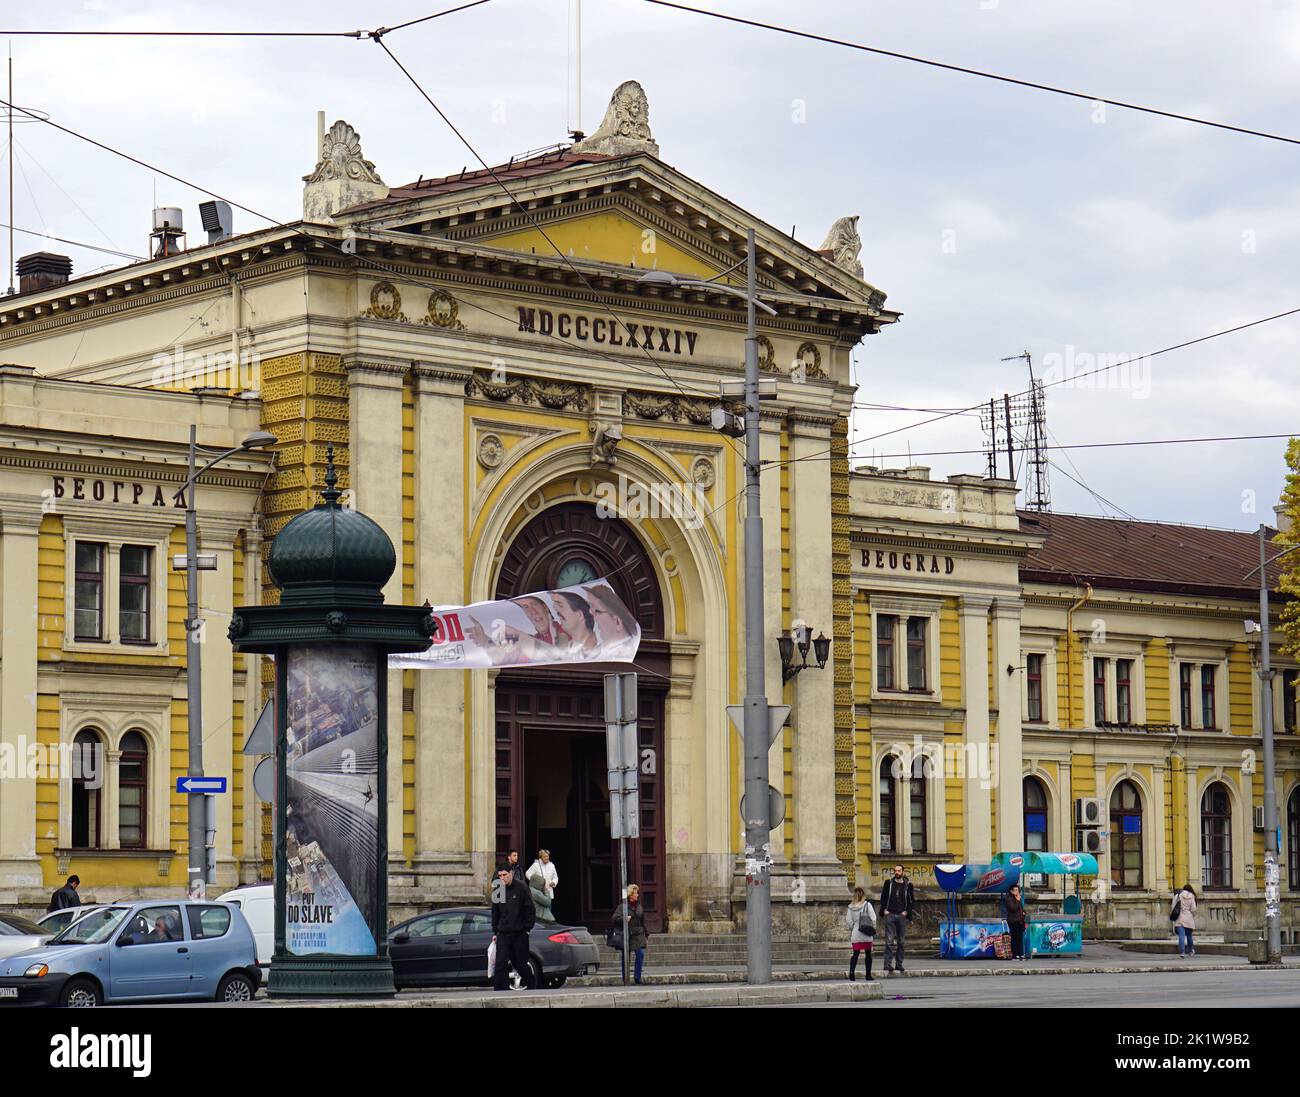 Belgrado, Serbia - 14 ottobre 2015: Edificio della stazione ferroviaria principale nel centro della capitale al giorno dell'autmn. Foto Stock